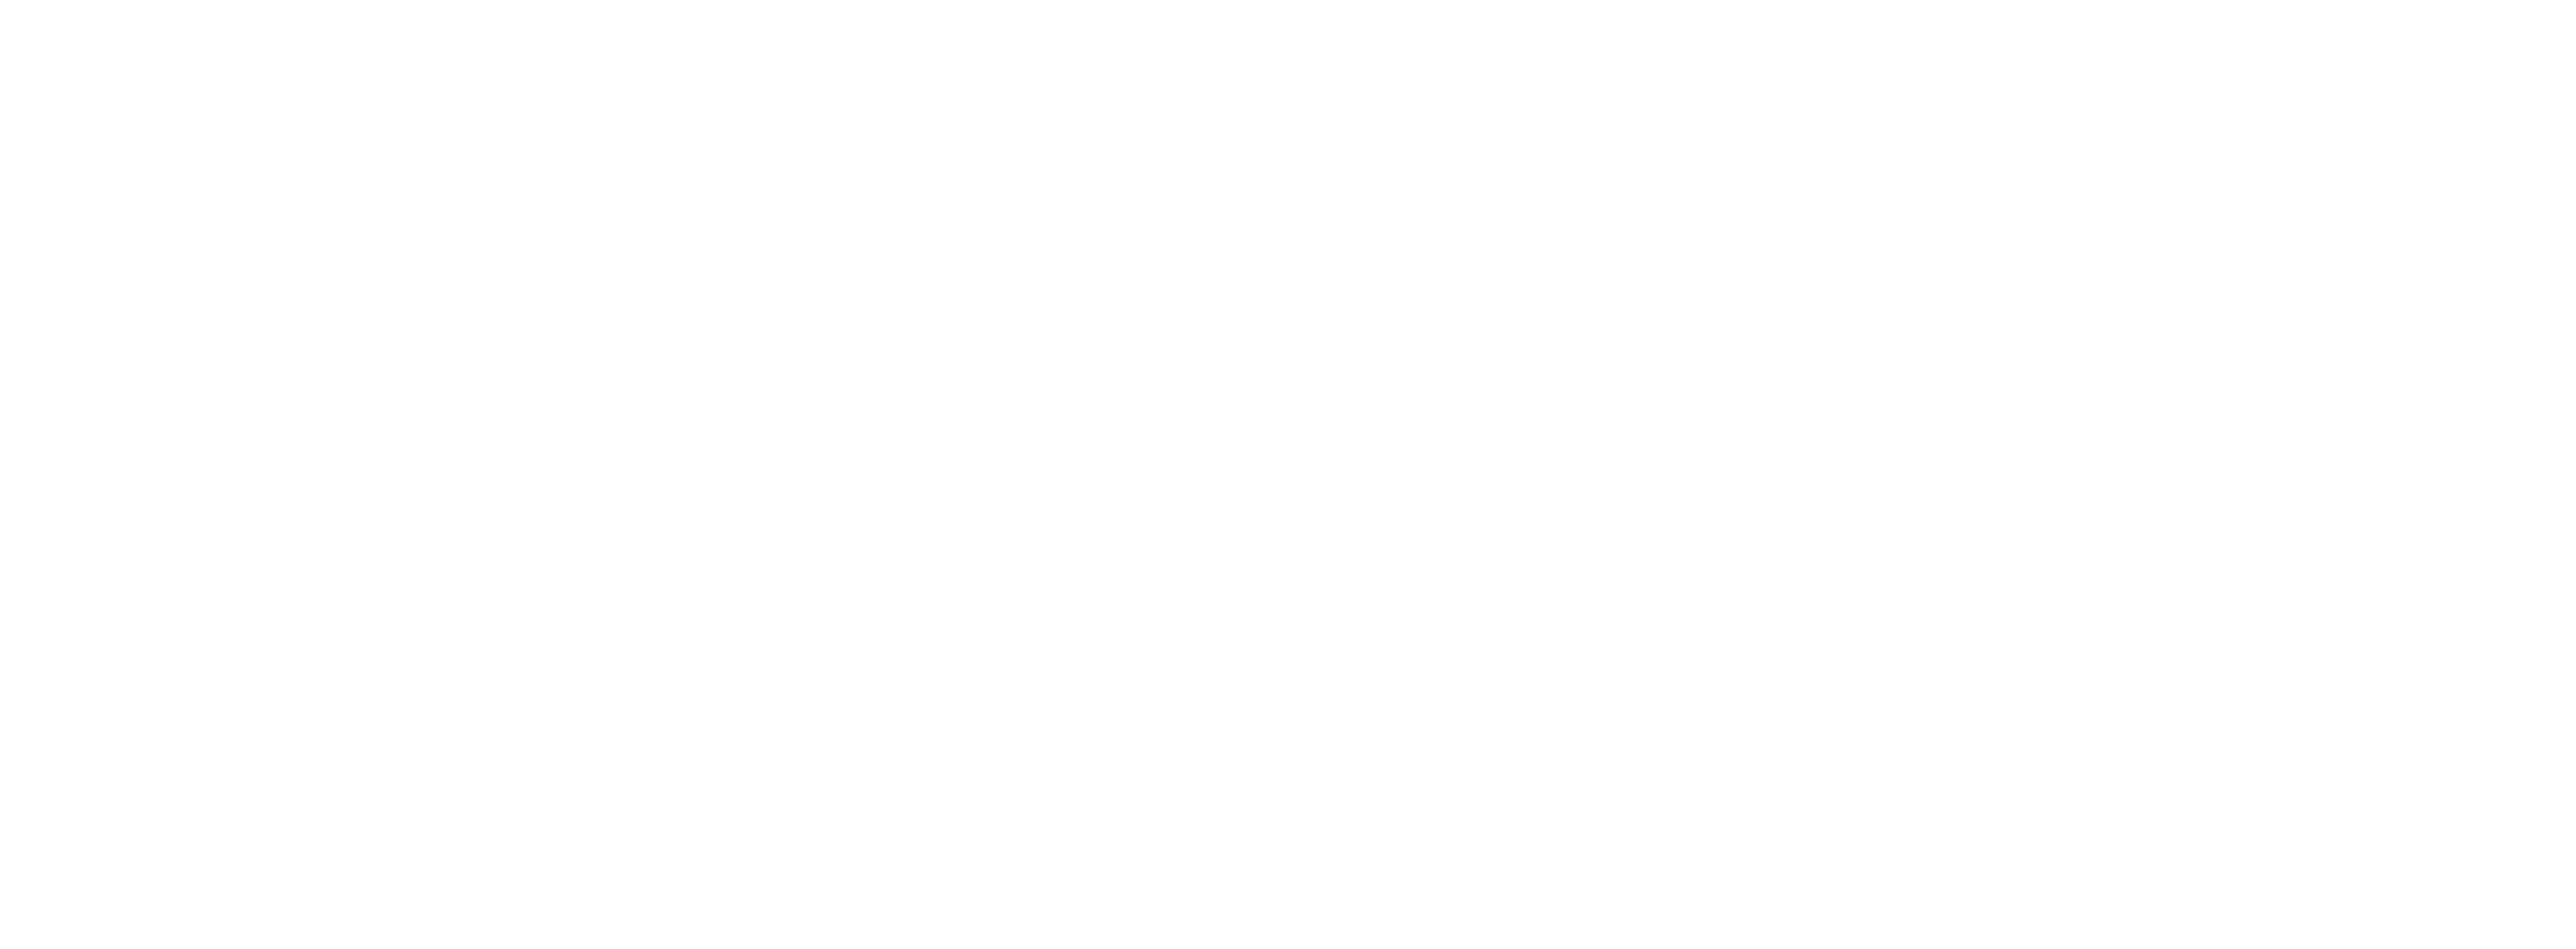 Carlo Gavazzi logo png. white carlo gavazzi logo png. carlo gavazzi png. carlo gavazzi png logo. carlo gavazzi logo HD. white carlo gavazzi logo HD png.